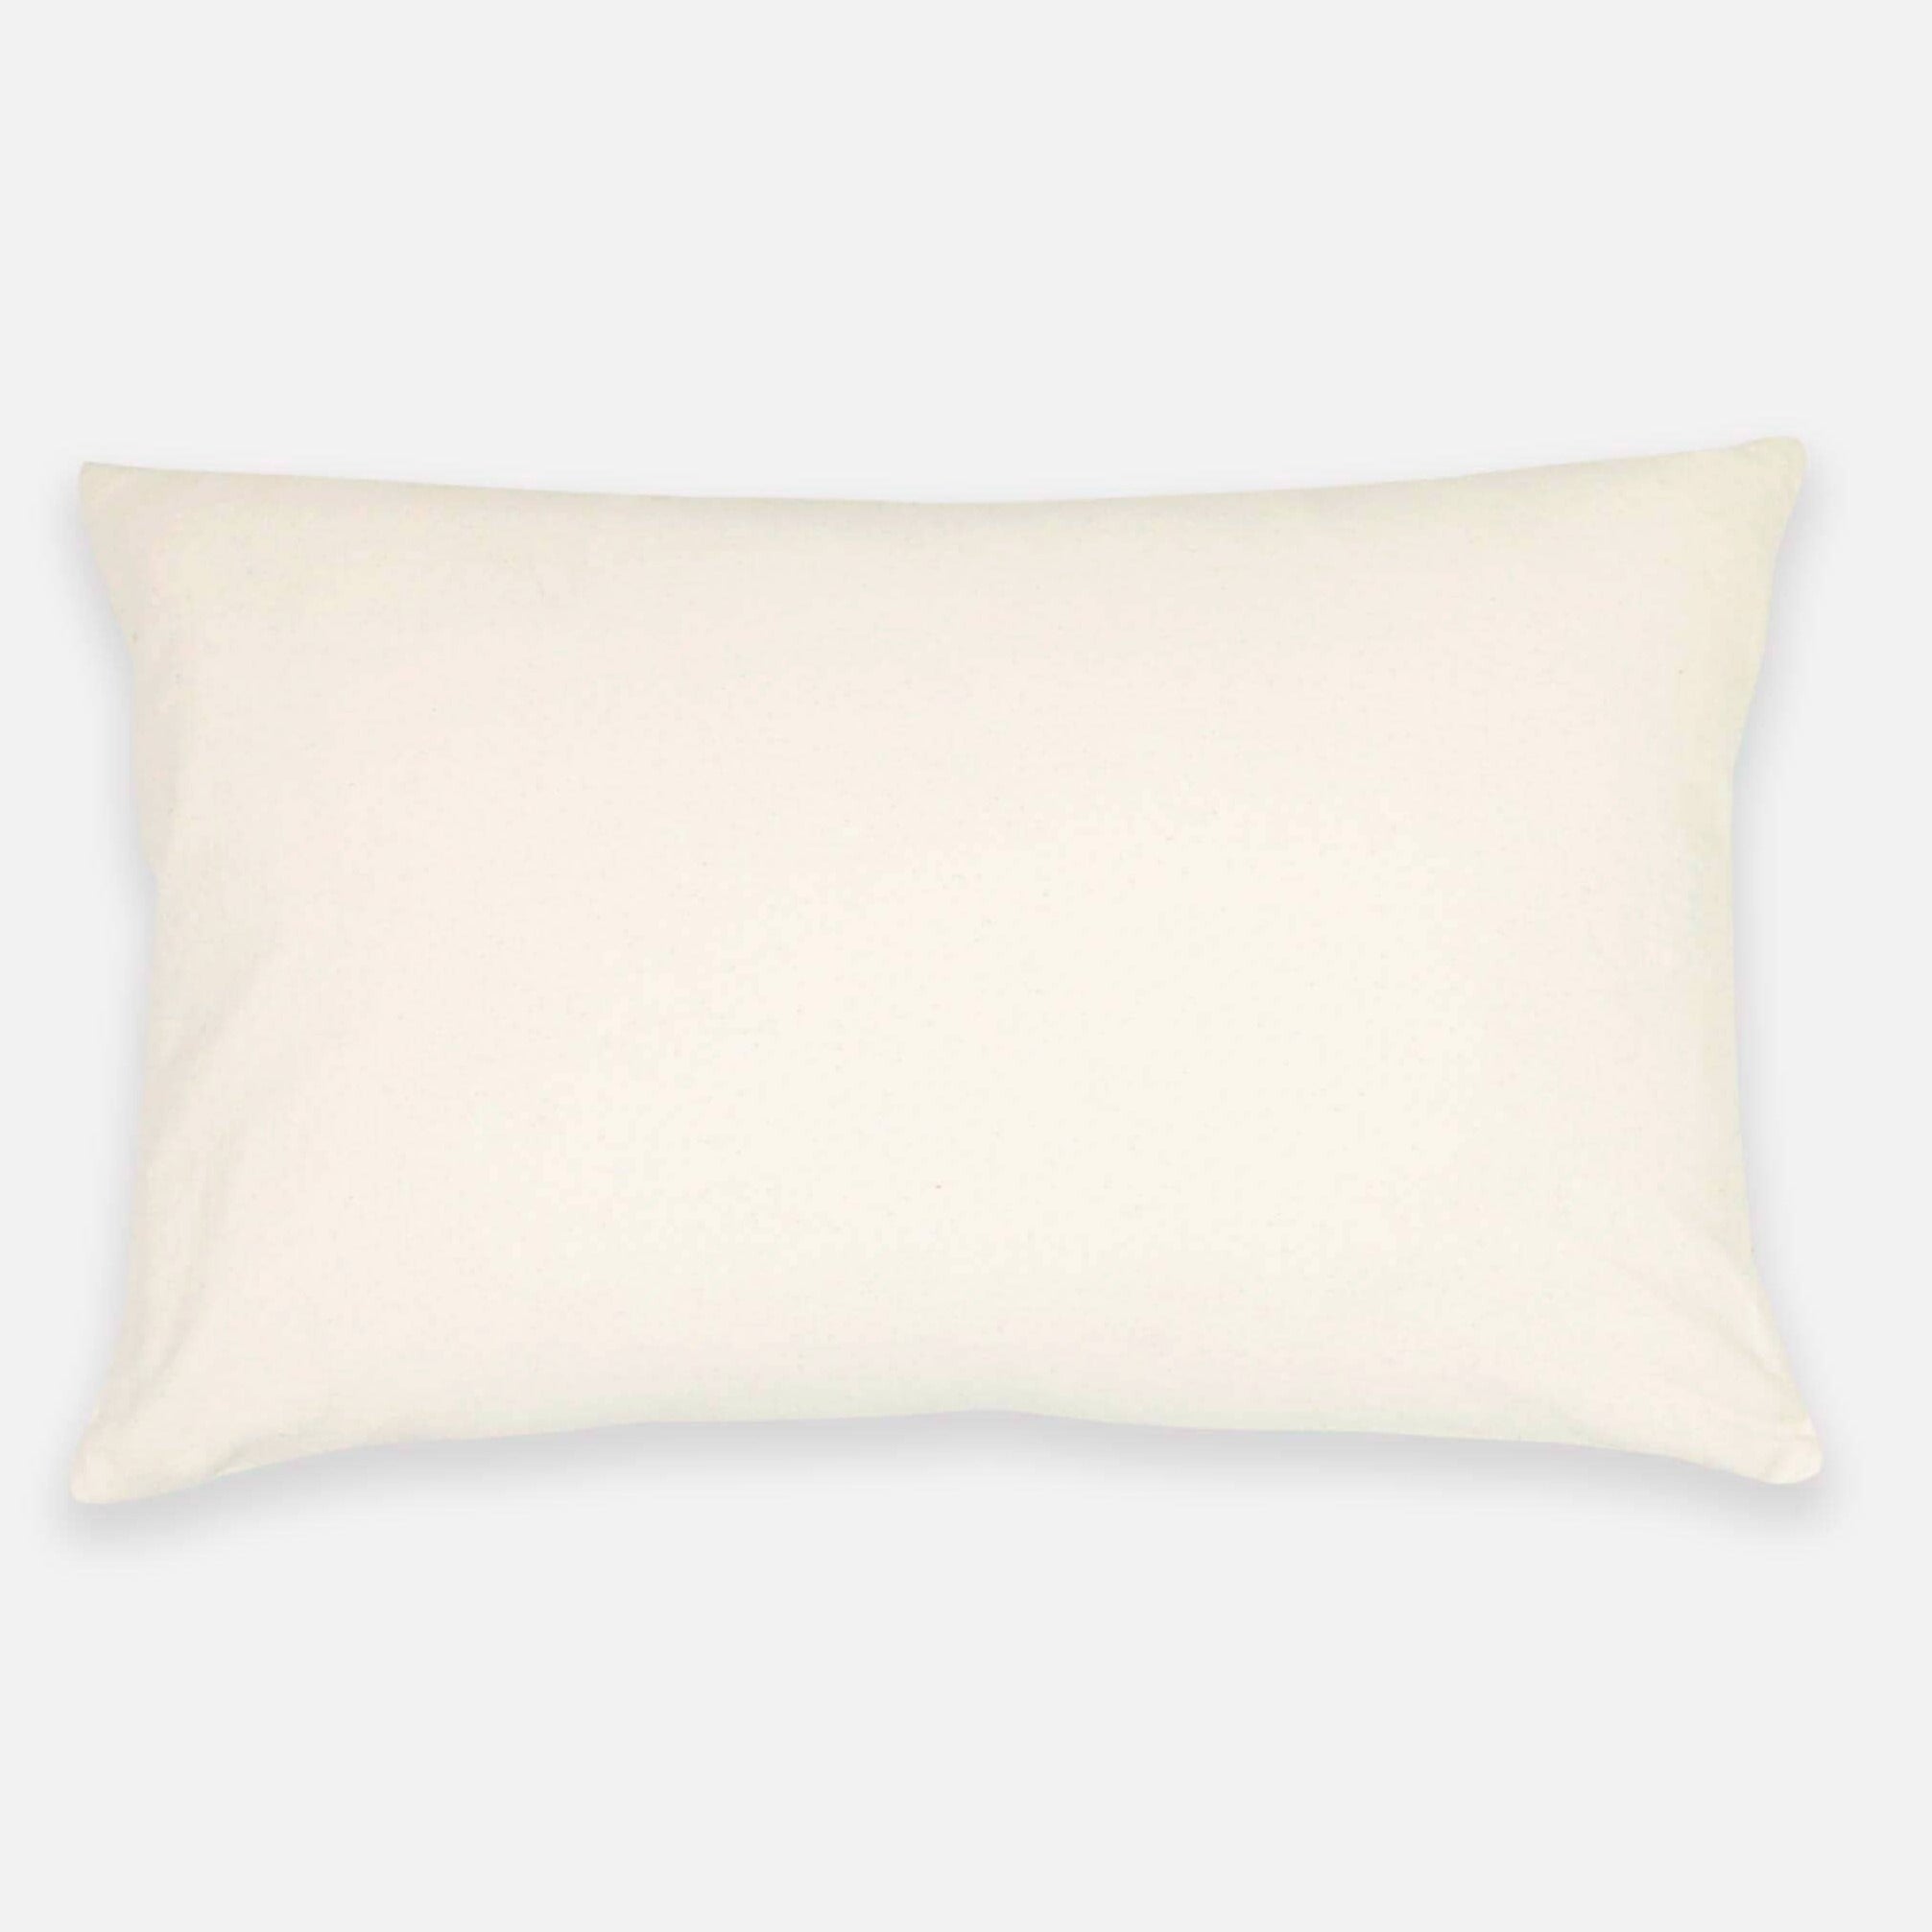 Patchwork Plaid Lumbar Pillow Cover - Navy